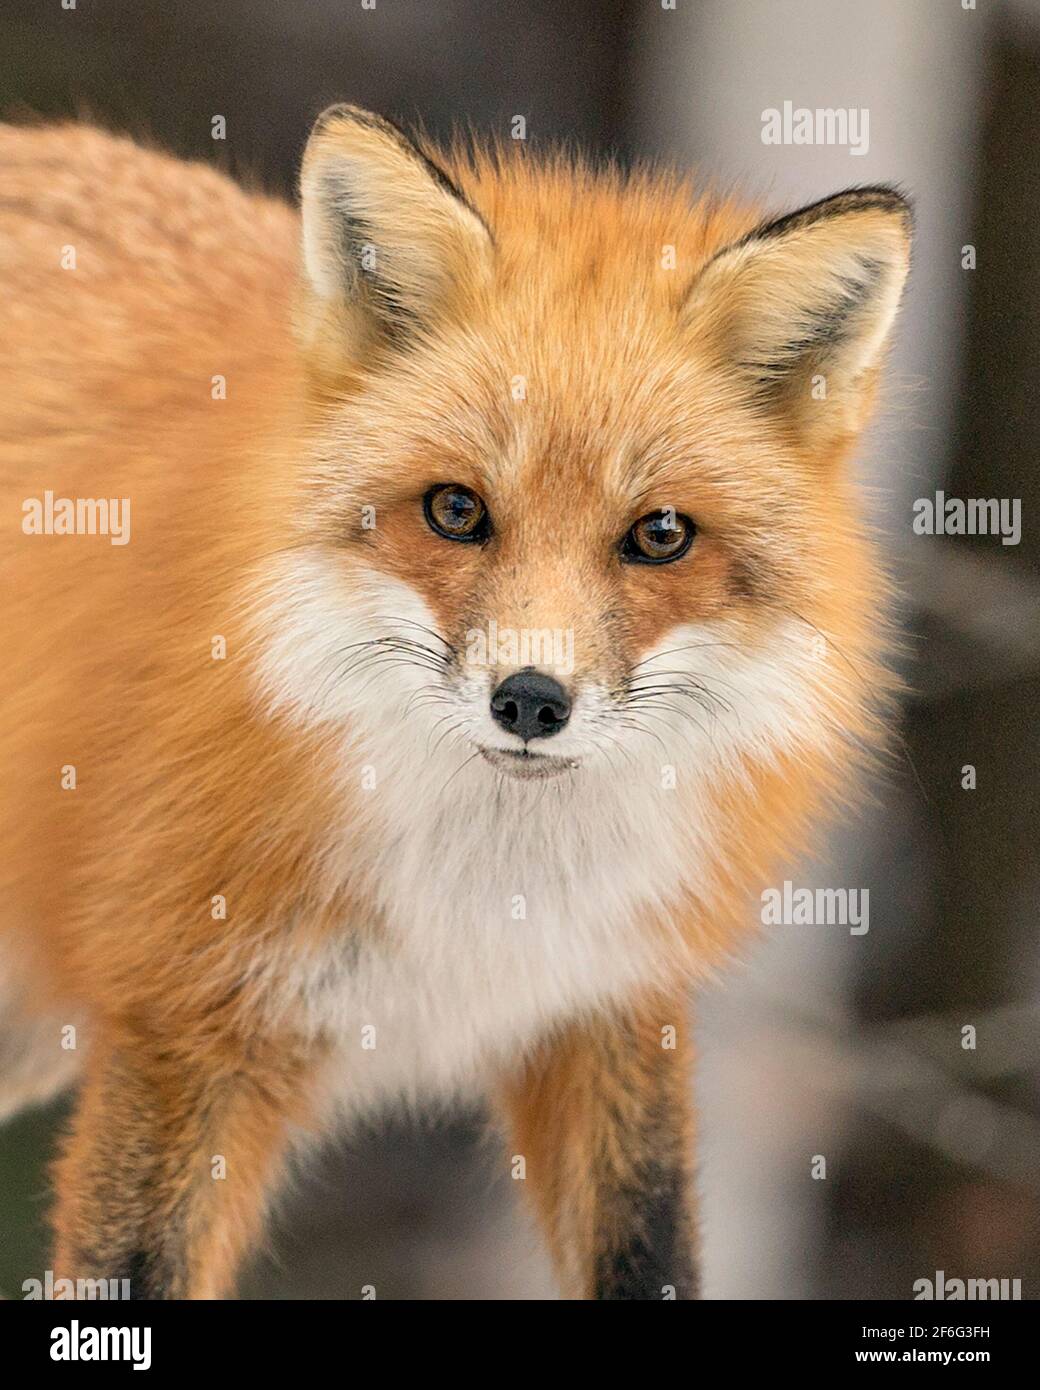 Vista del profilo in primo piano della testa di Red Fox con sfondo sfocato nella foresta guardando la fotocamera che mostra la pelliccia, nel suo ambiente. Immagine FOX. Foto Stock